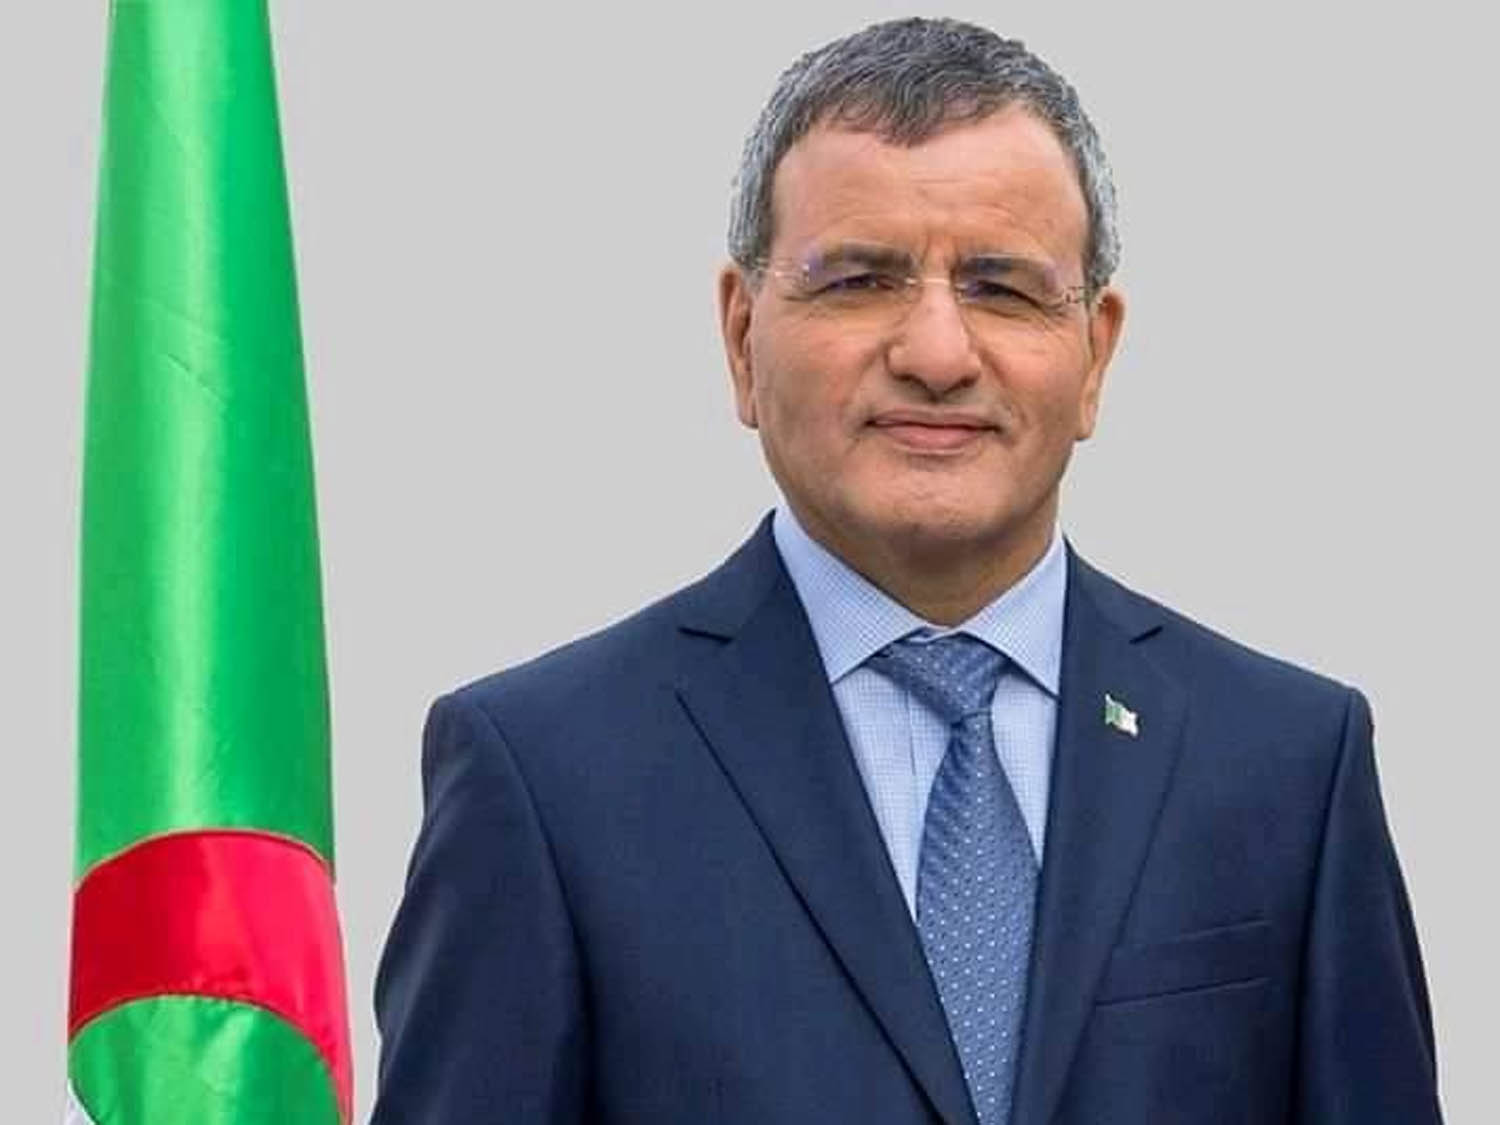 الجنرال المتقاعد علي غديري مرشح لانتخابات الرئاسة في الجزائر